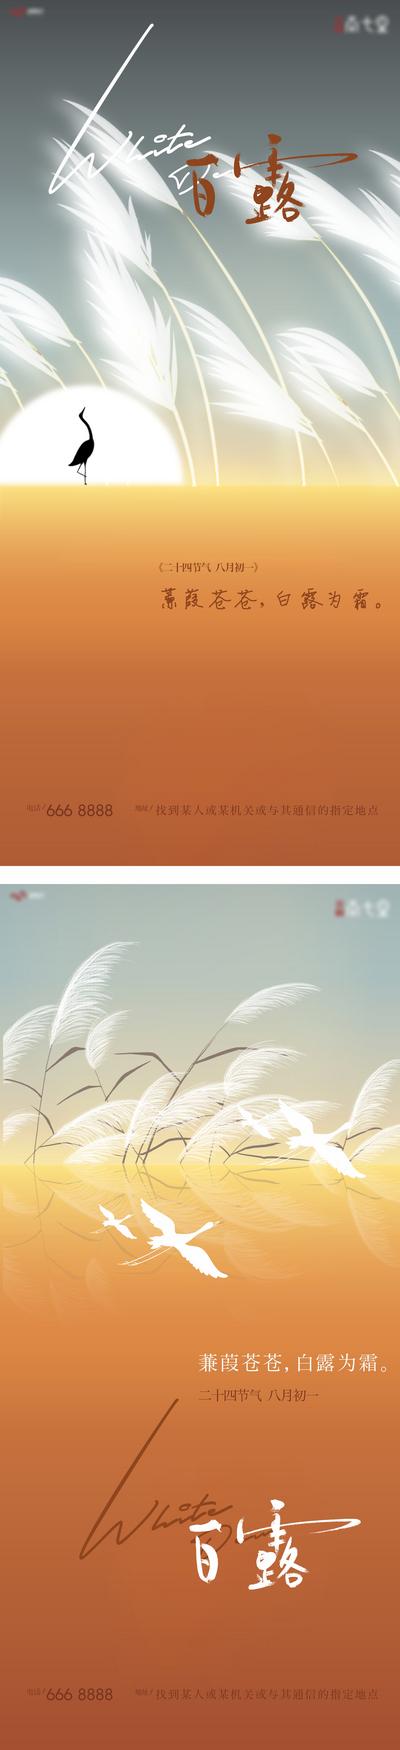 南门网 海报 二十四节气 白露 芦苇 白鹭  系列